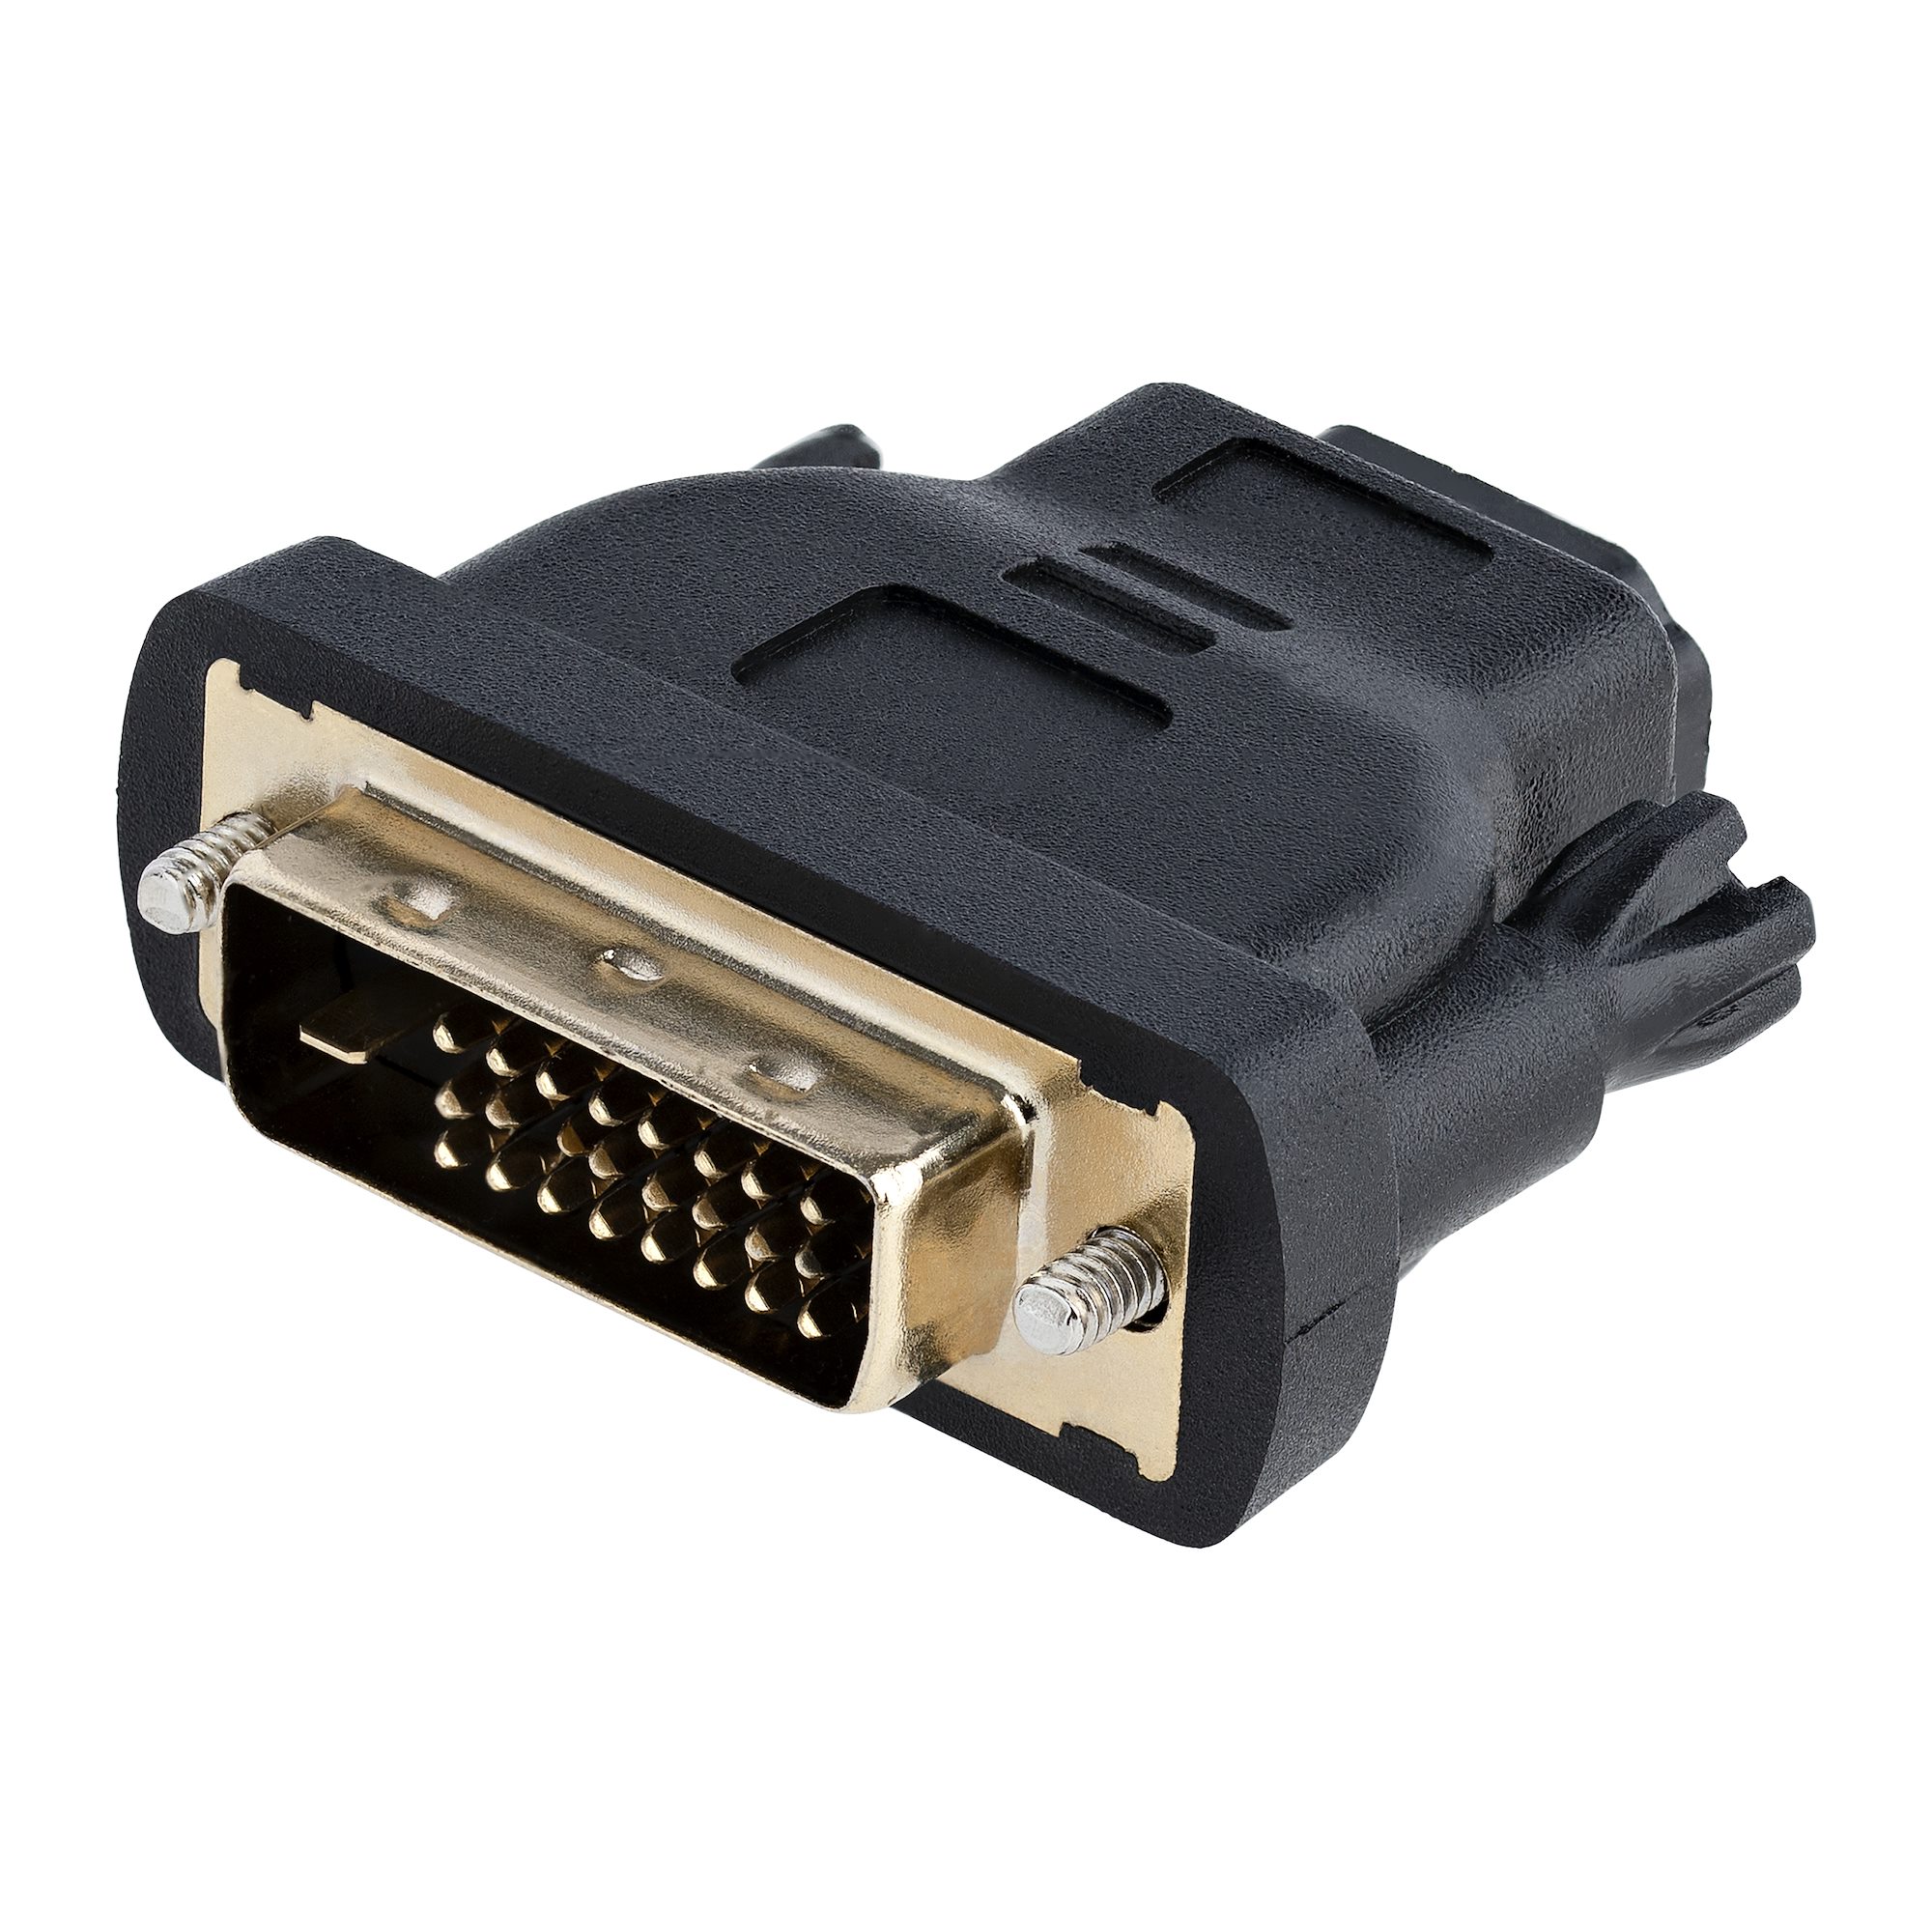 市場 HDMI-DVI ケーブル hdmi 変換 1080P対応 変換ケーブル2M 双方向対応 dvi